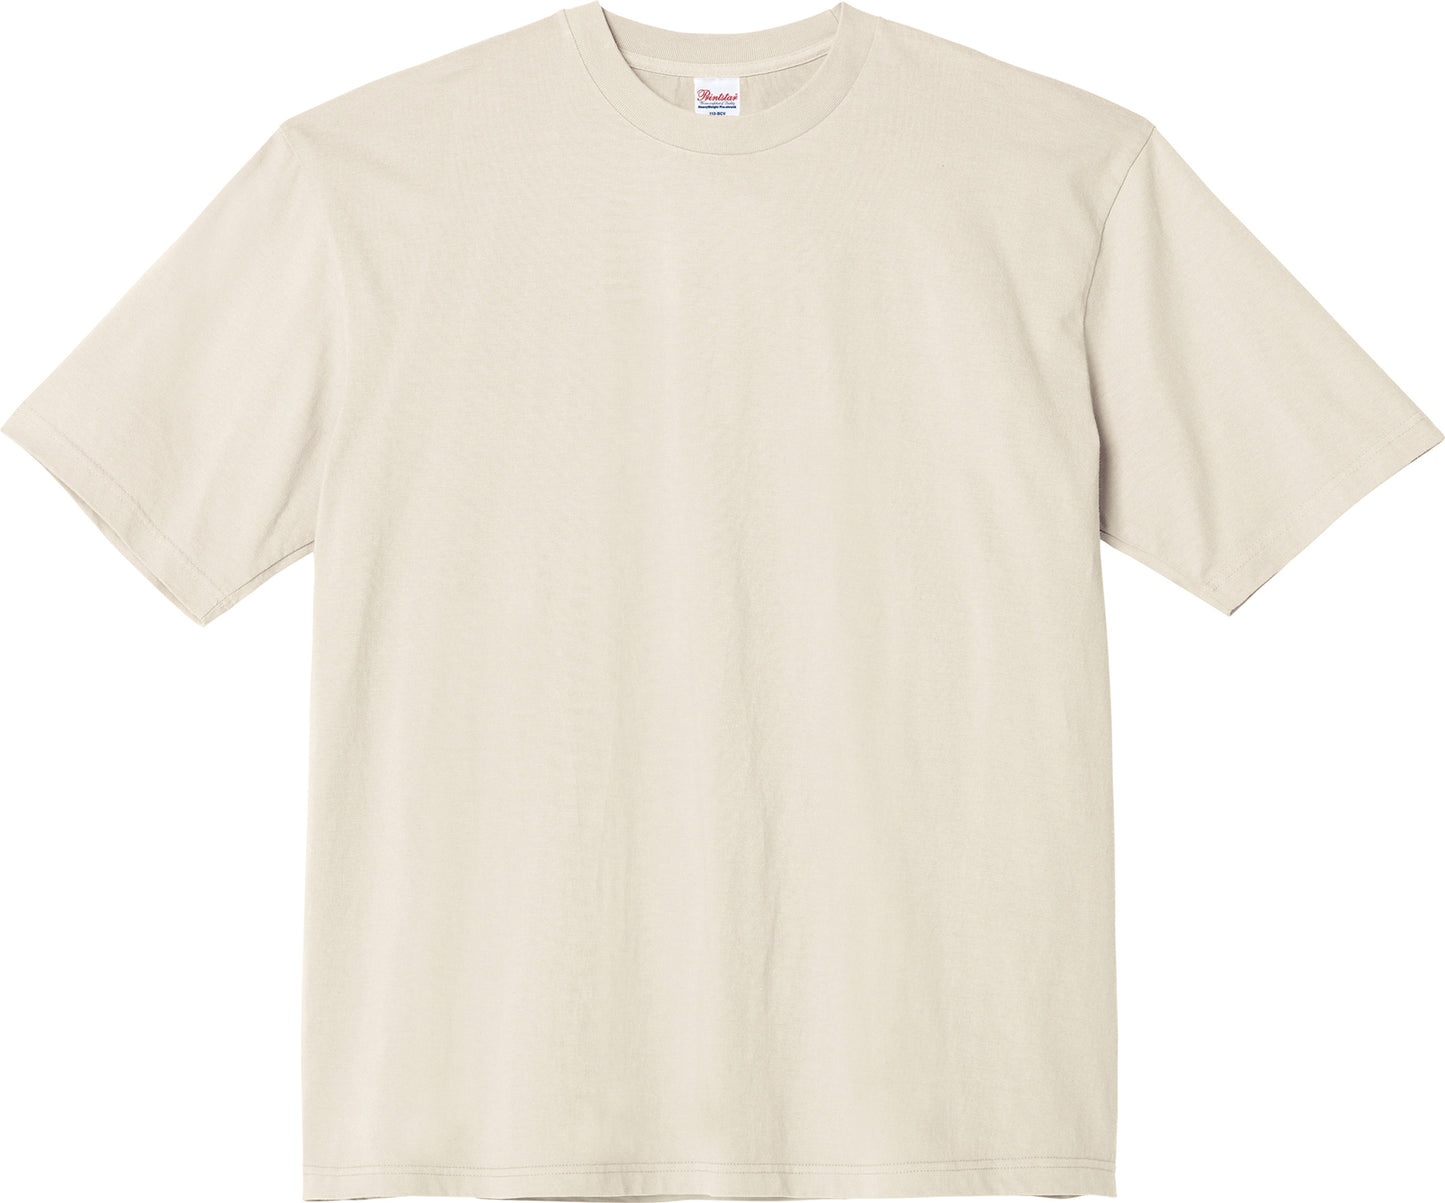 Printstar [*00113-BCV] 5.6oz Heavy Weight Topic T-shirts